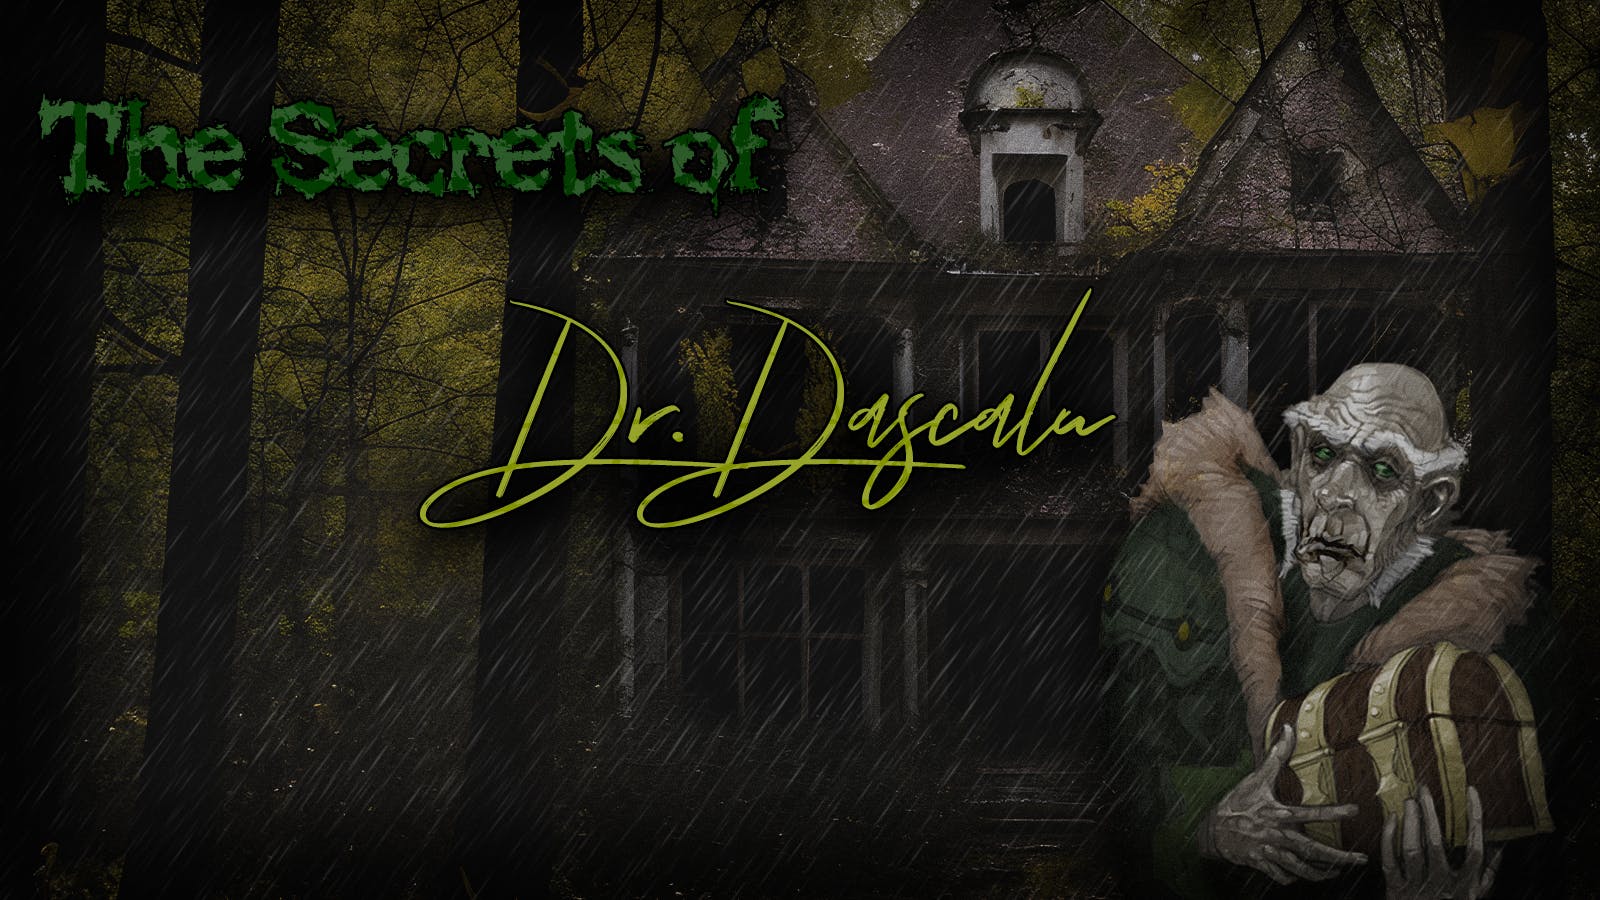 The Secrets of Dr. Dascalu